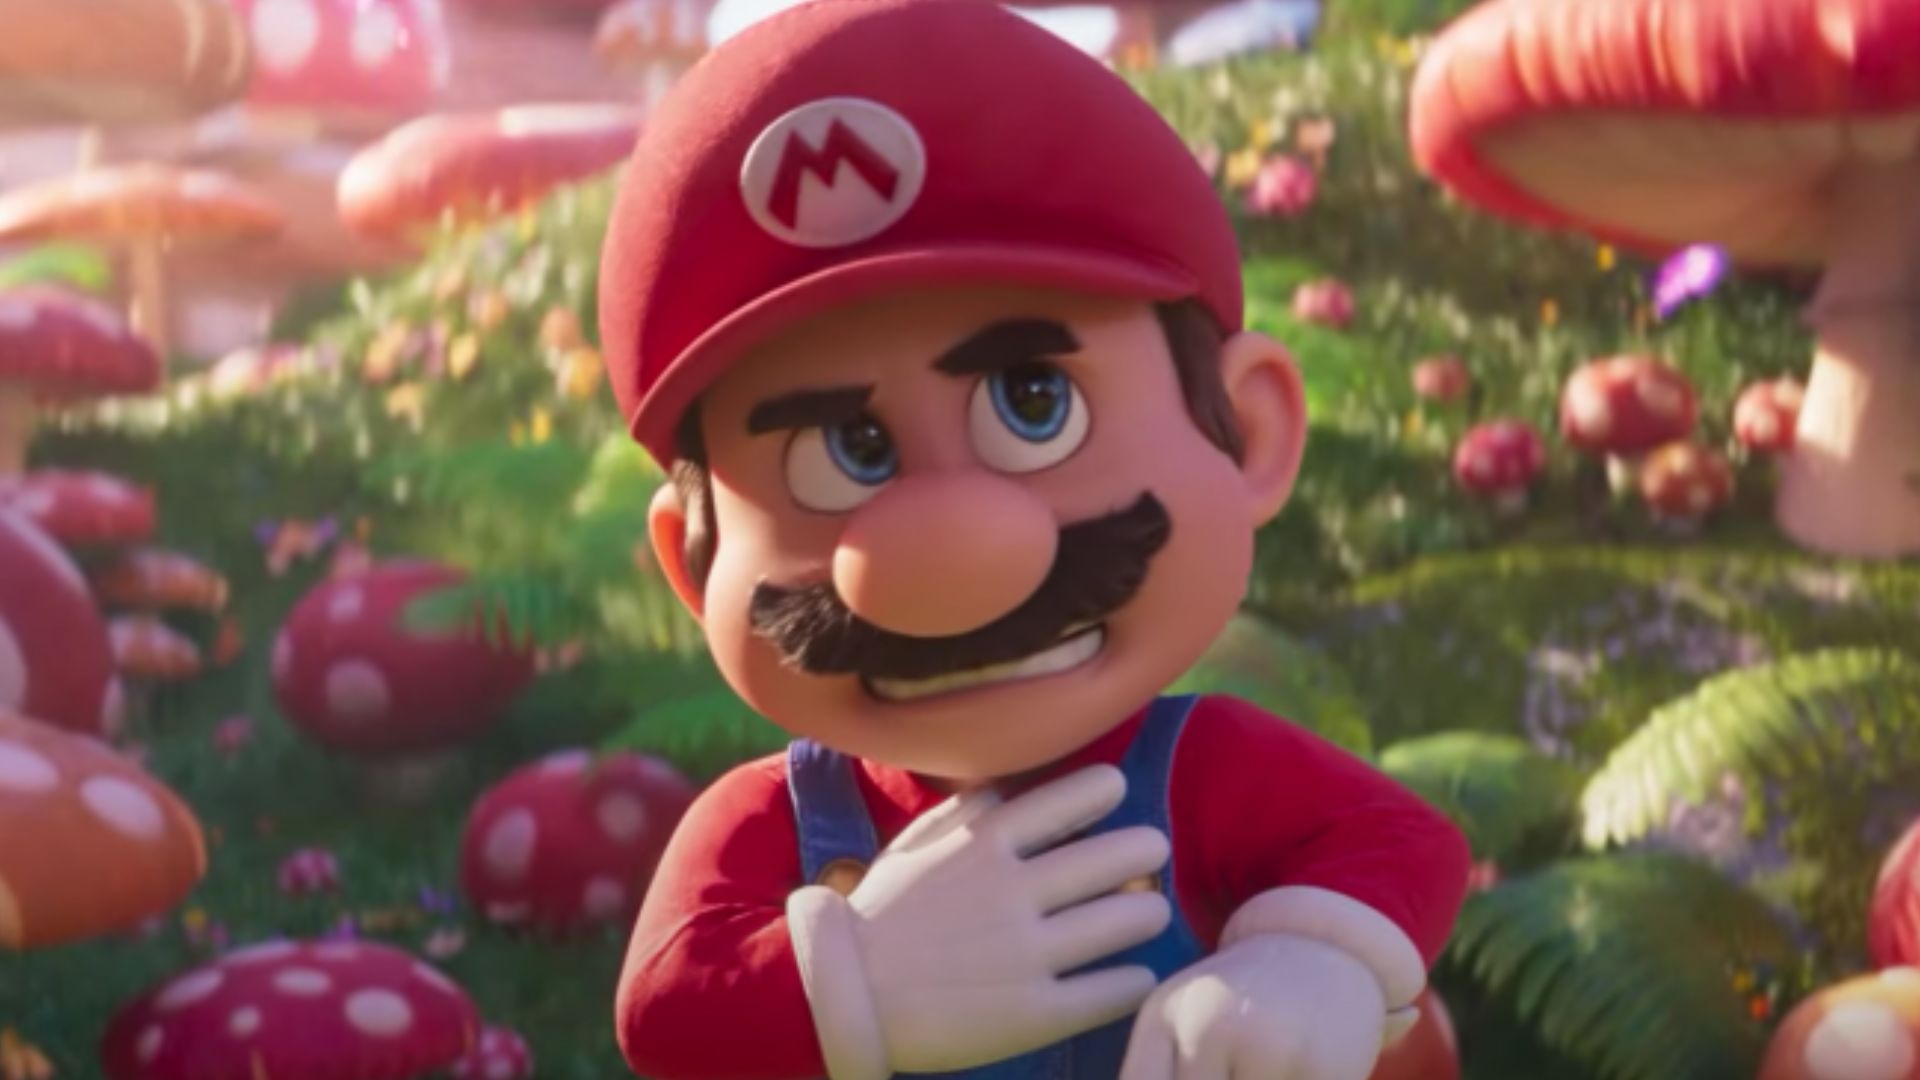 Novo filme do Mario estreia em 2022 com Chris Pratt na voz do